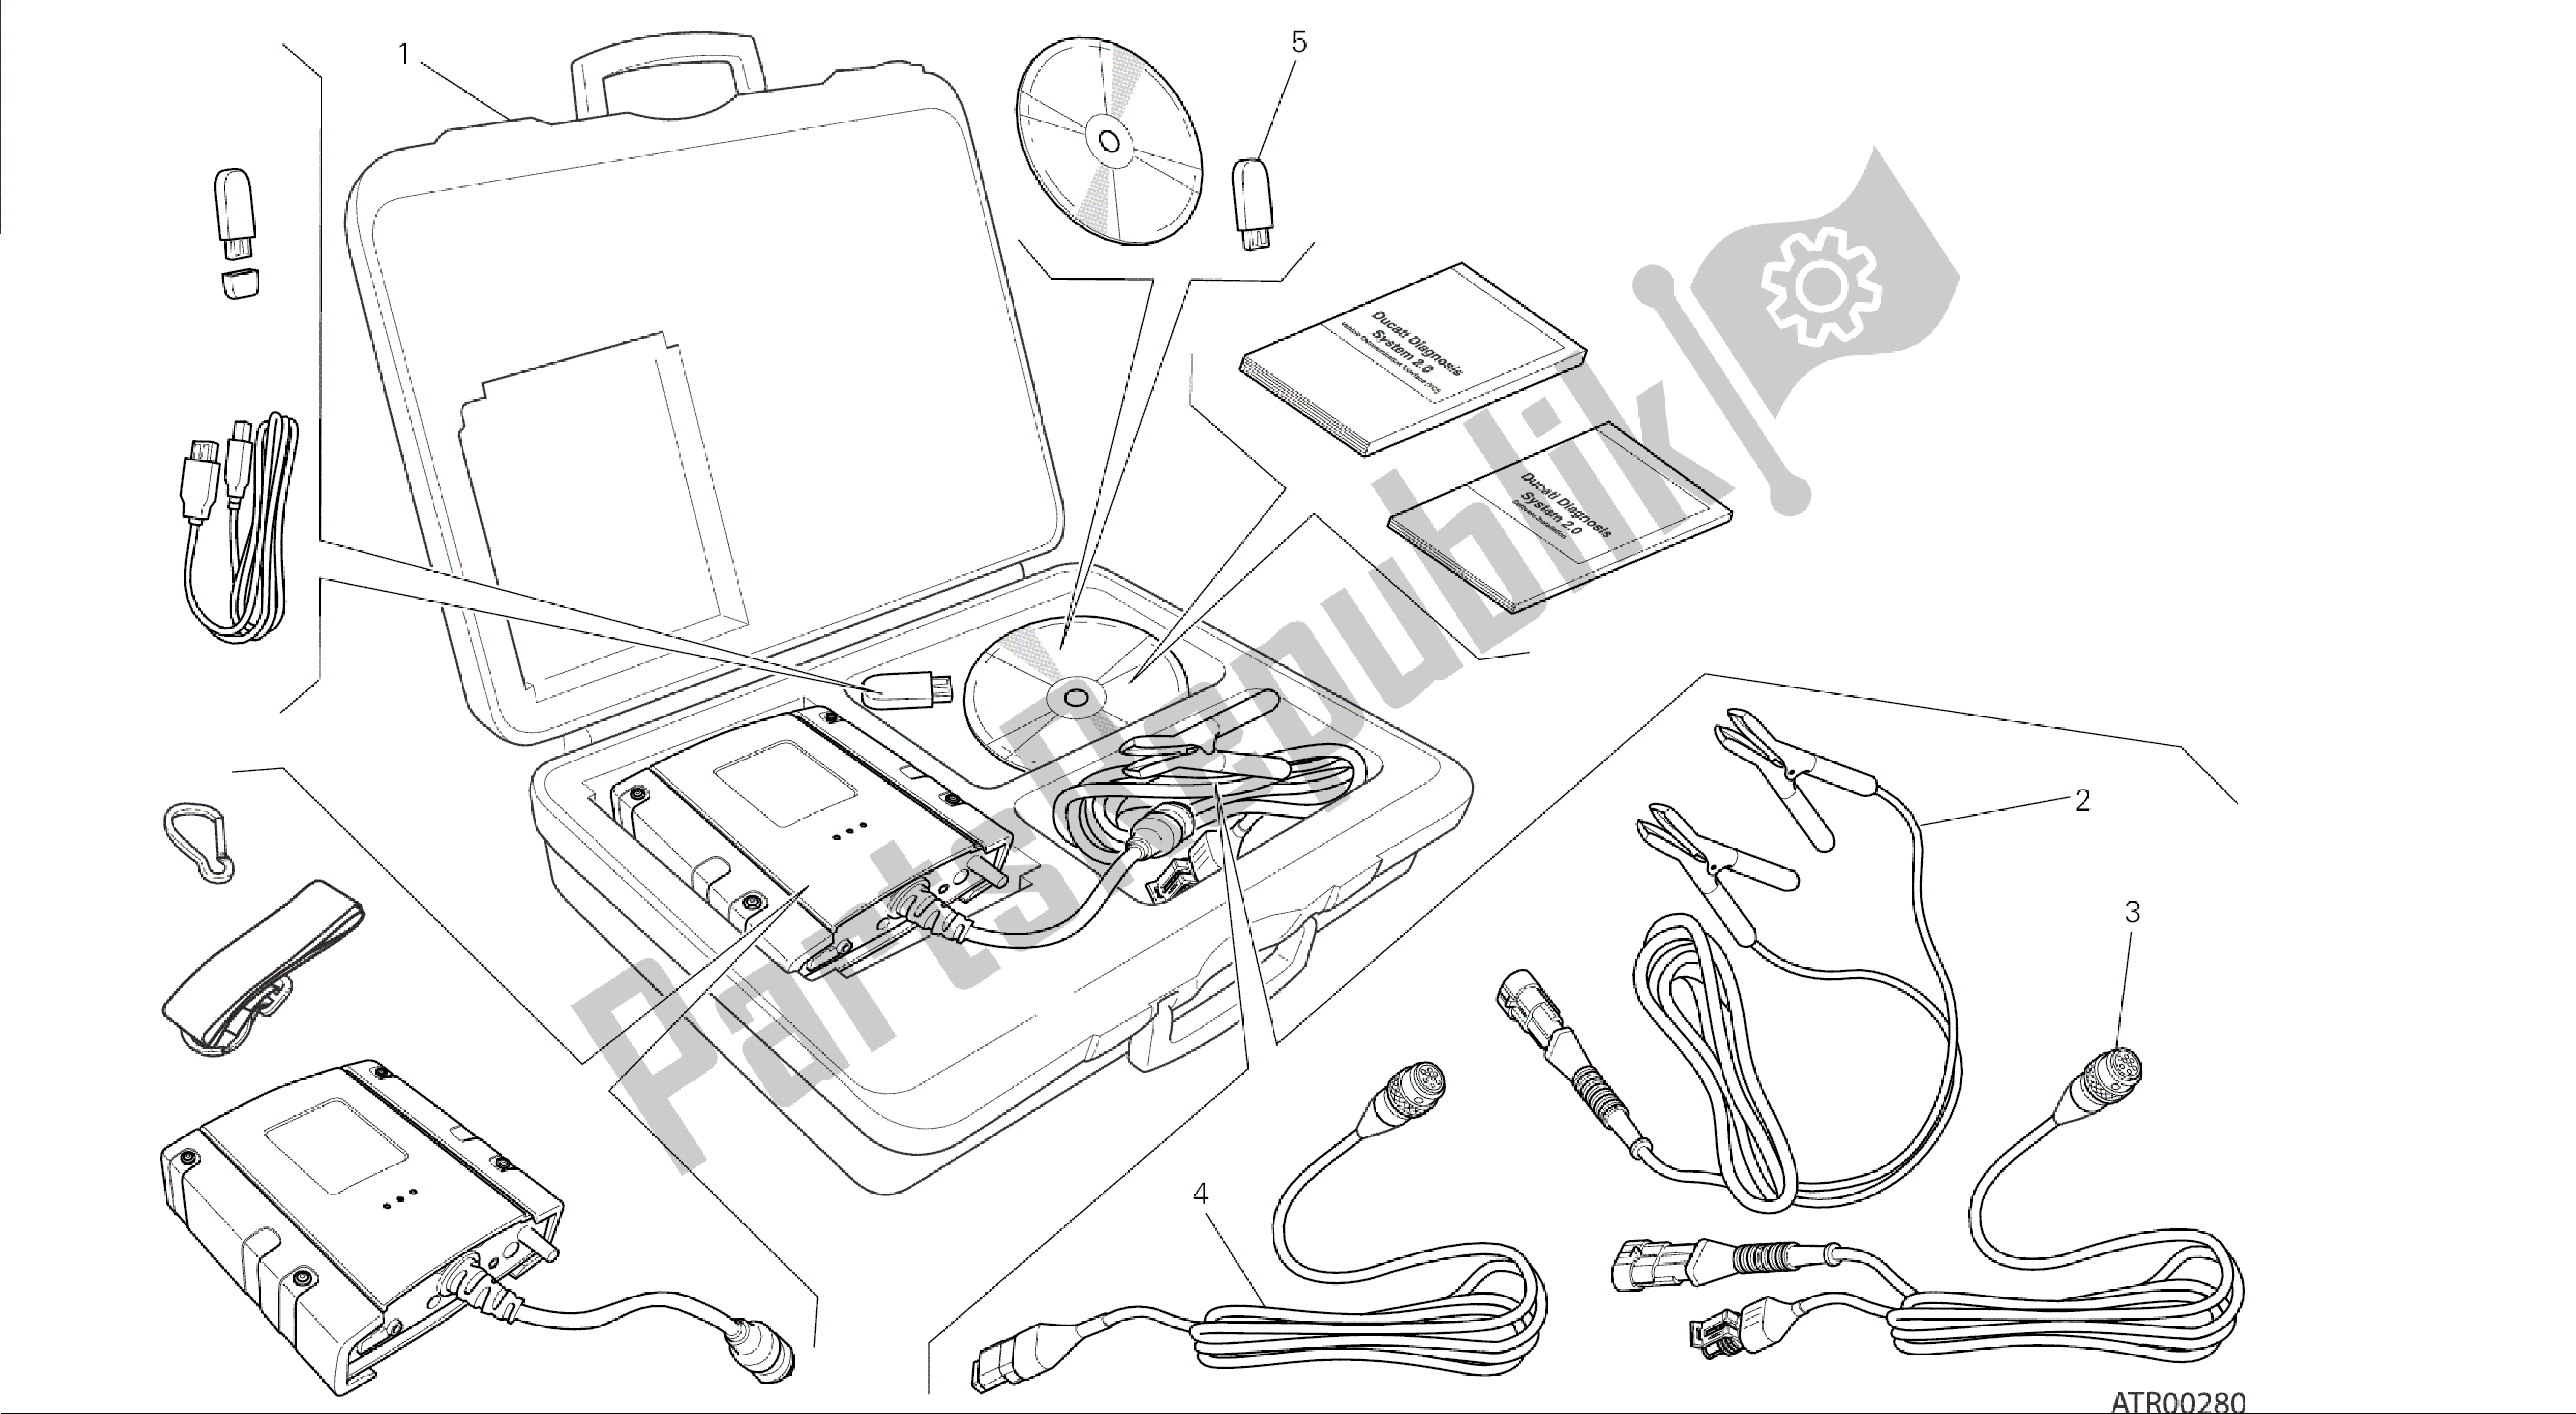 Alle onderdelen voor de Tekening 001 - Dds (2) Tester [mod: 1199 Abs; Xst: Aus, Bra, Chn, Eur, Fra, Jap] Groepstools van de Ducati Panigale ABS 1199 2014